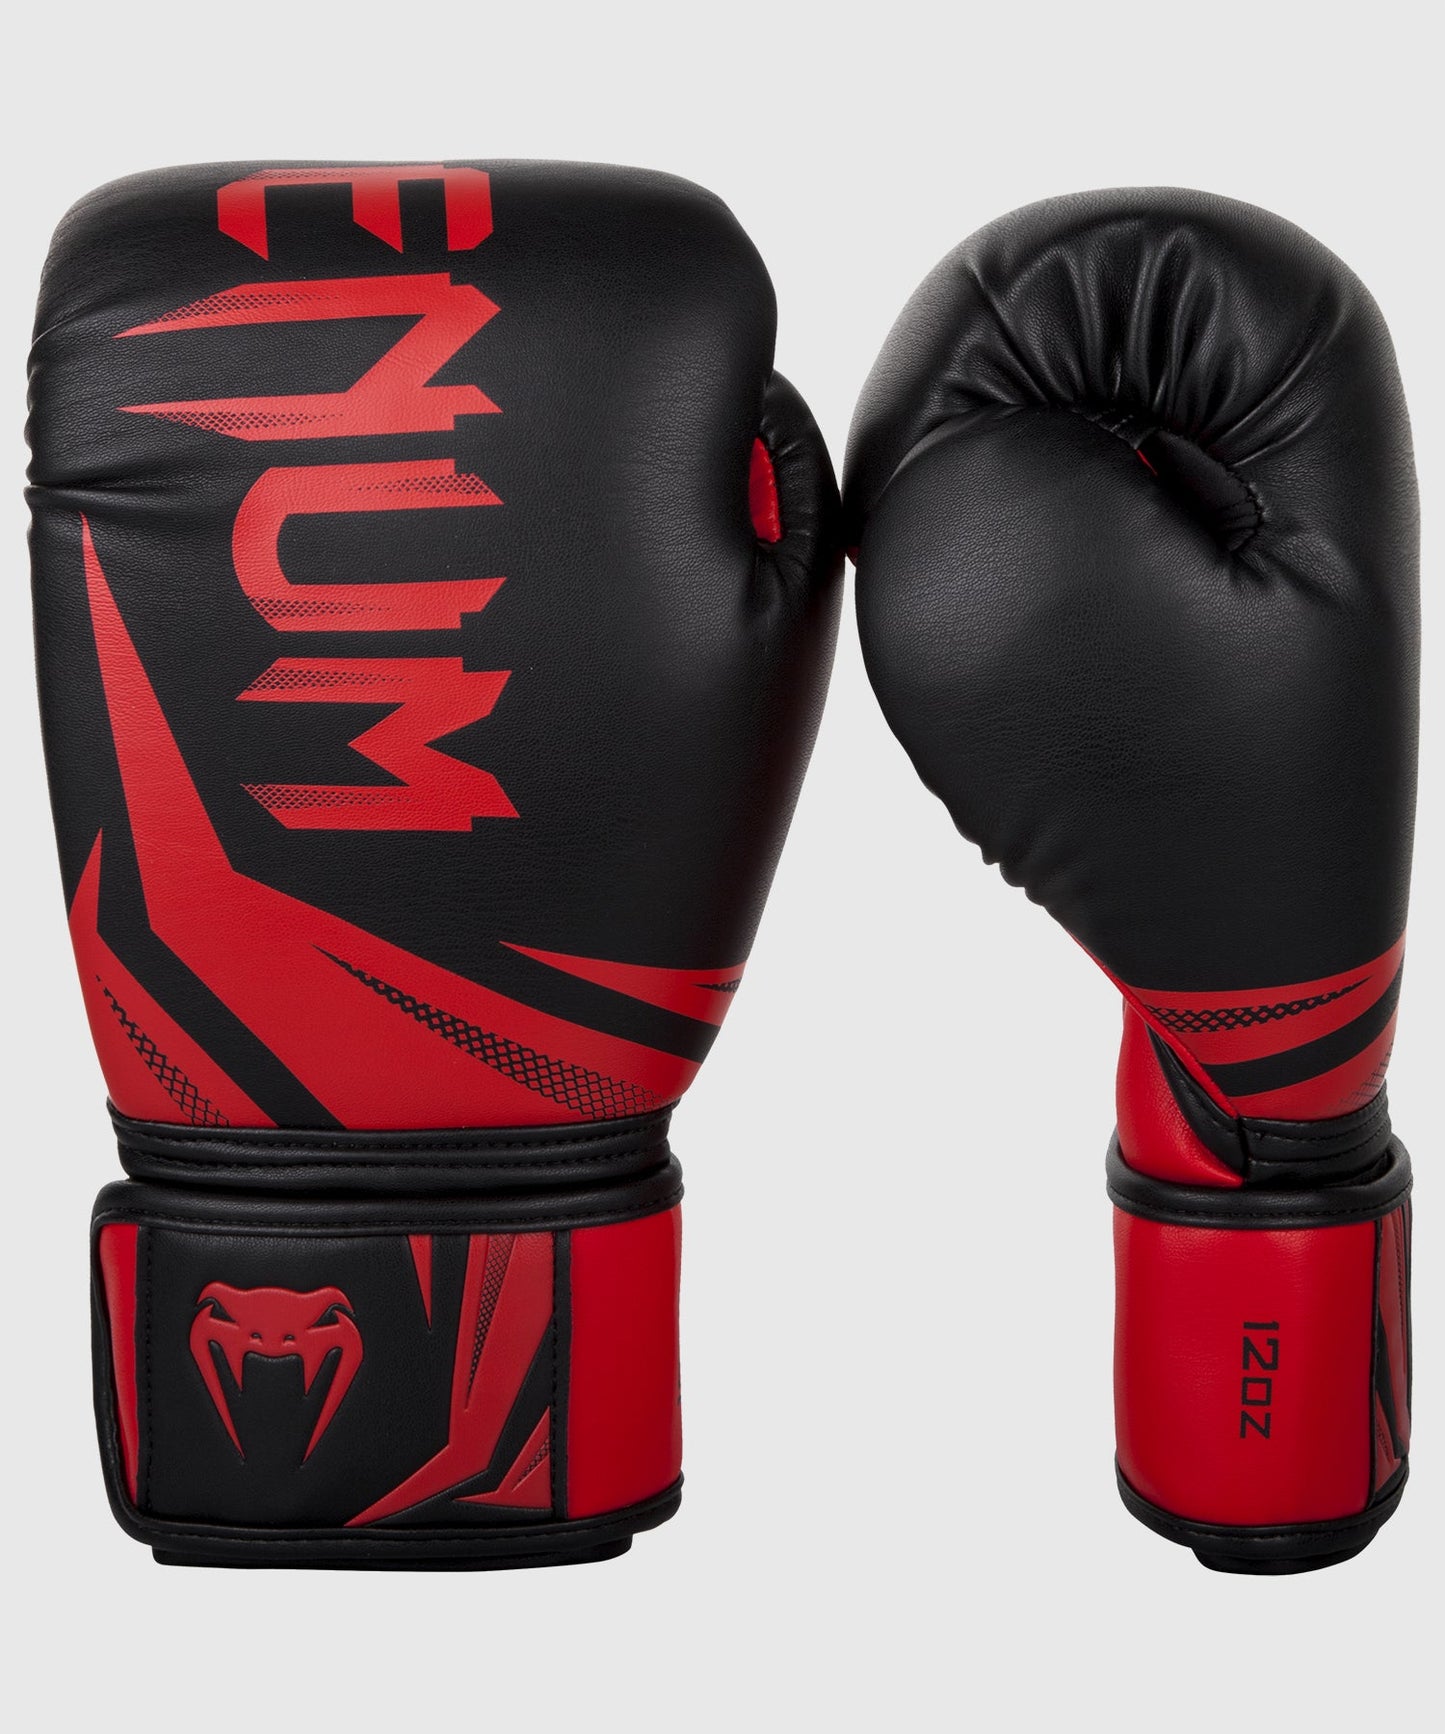 Gants de boxe Venum Challenger 3.0 avec une large protection de la main